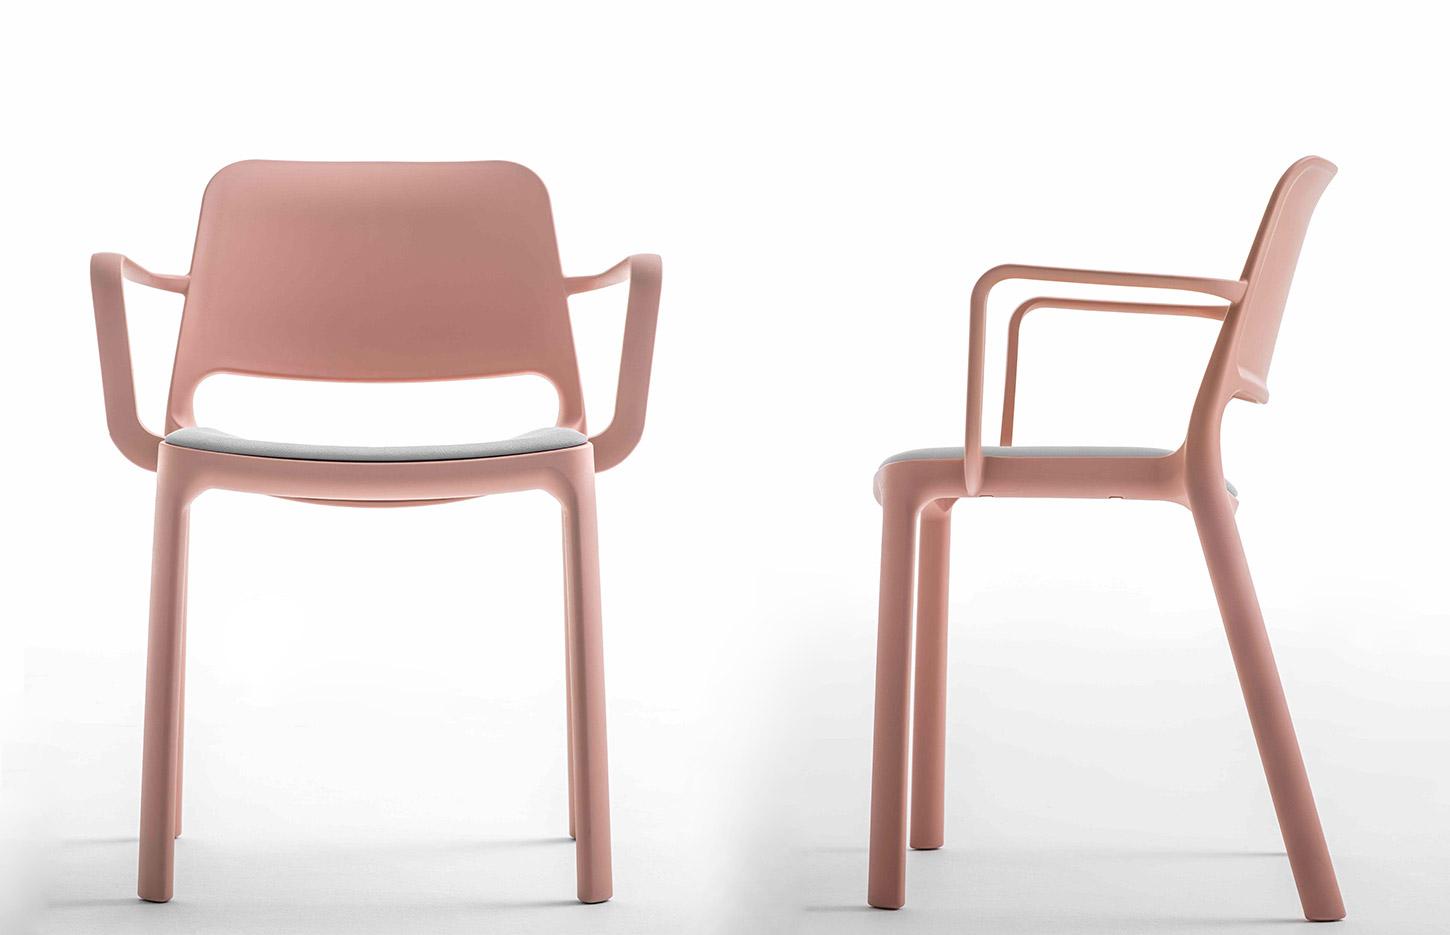 Chaise en polypropylène avec accoudoirs et coussin en option, gamme Lugano, France Bureau